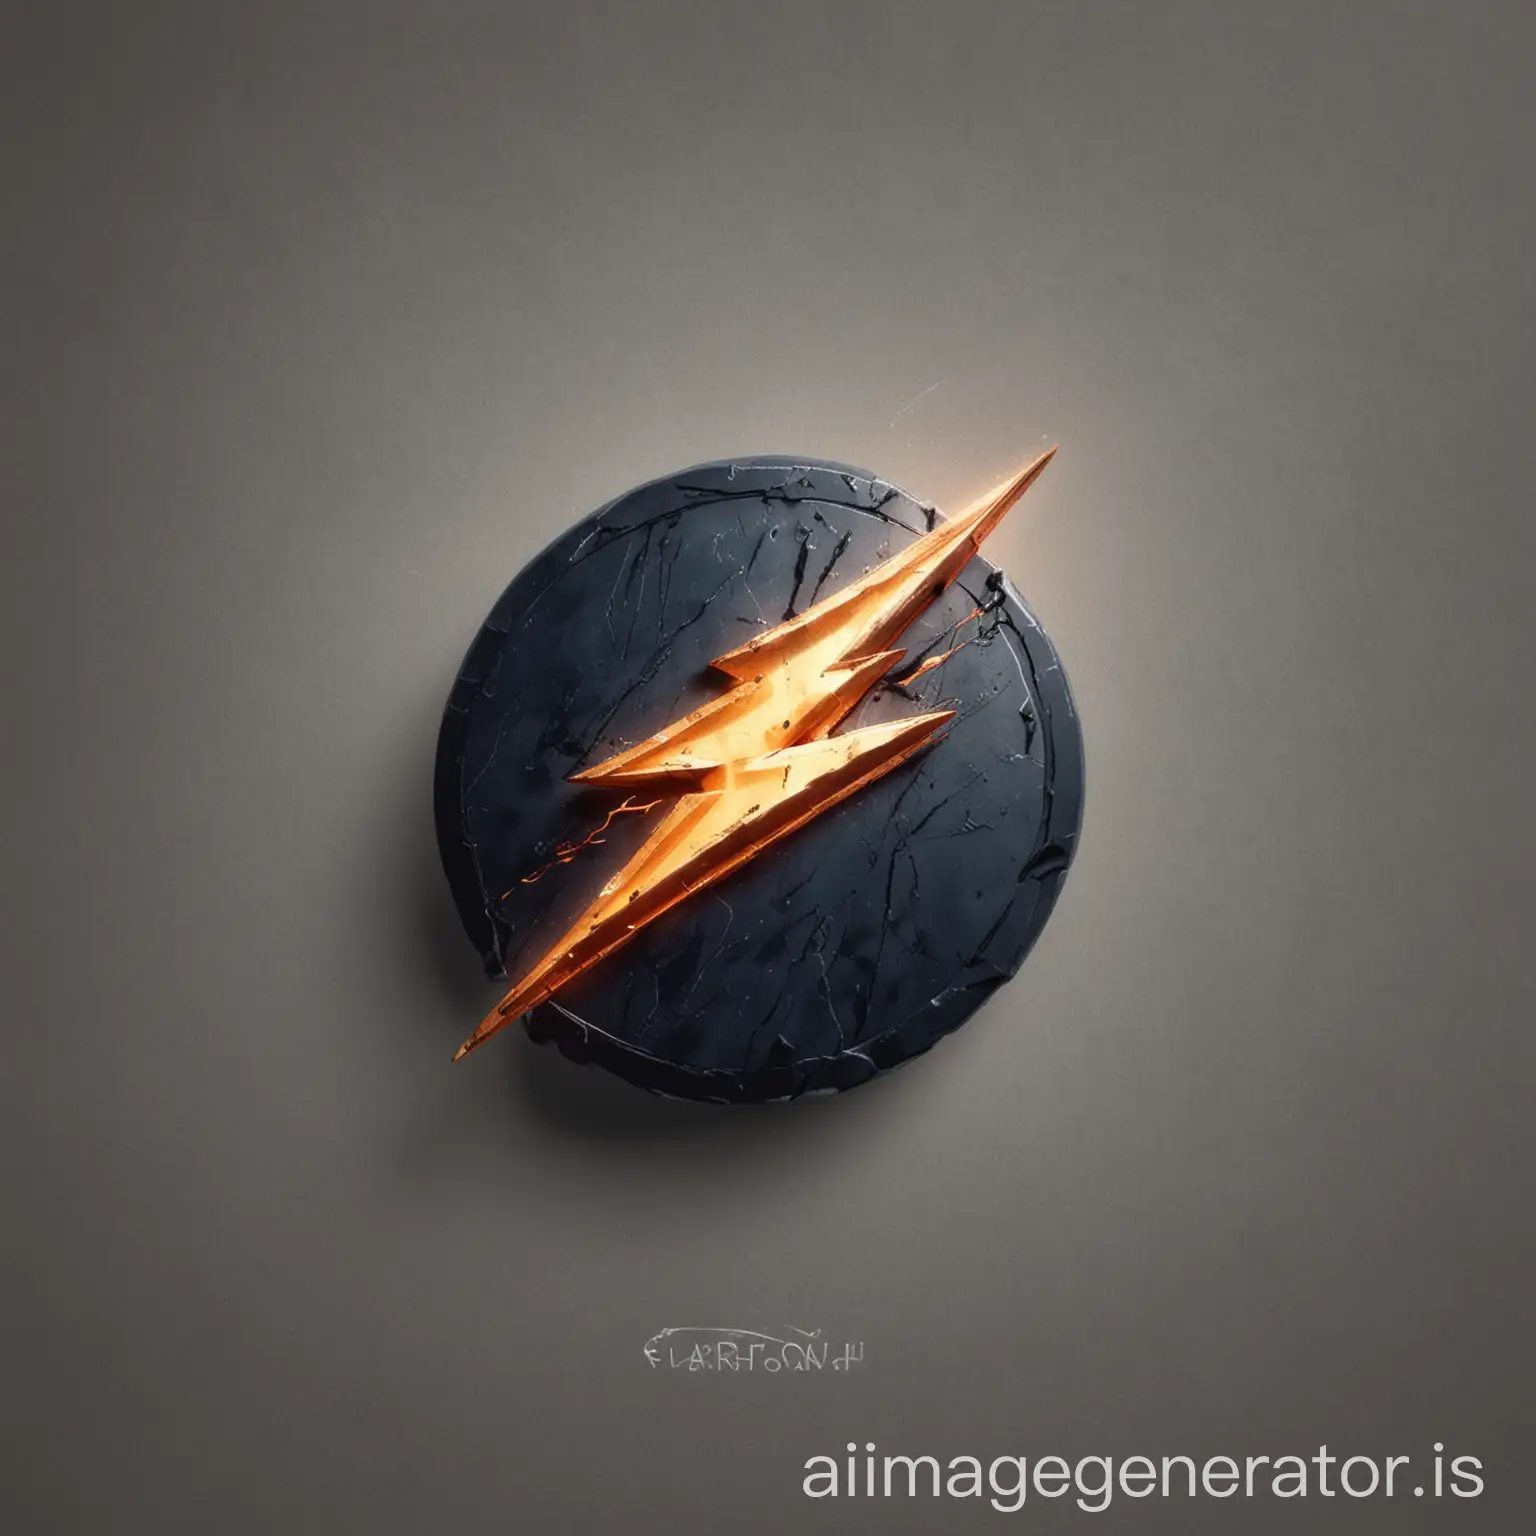 Lightning logo

